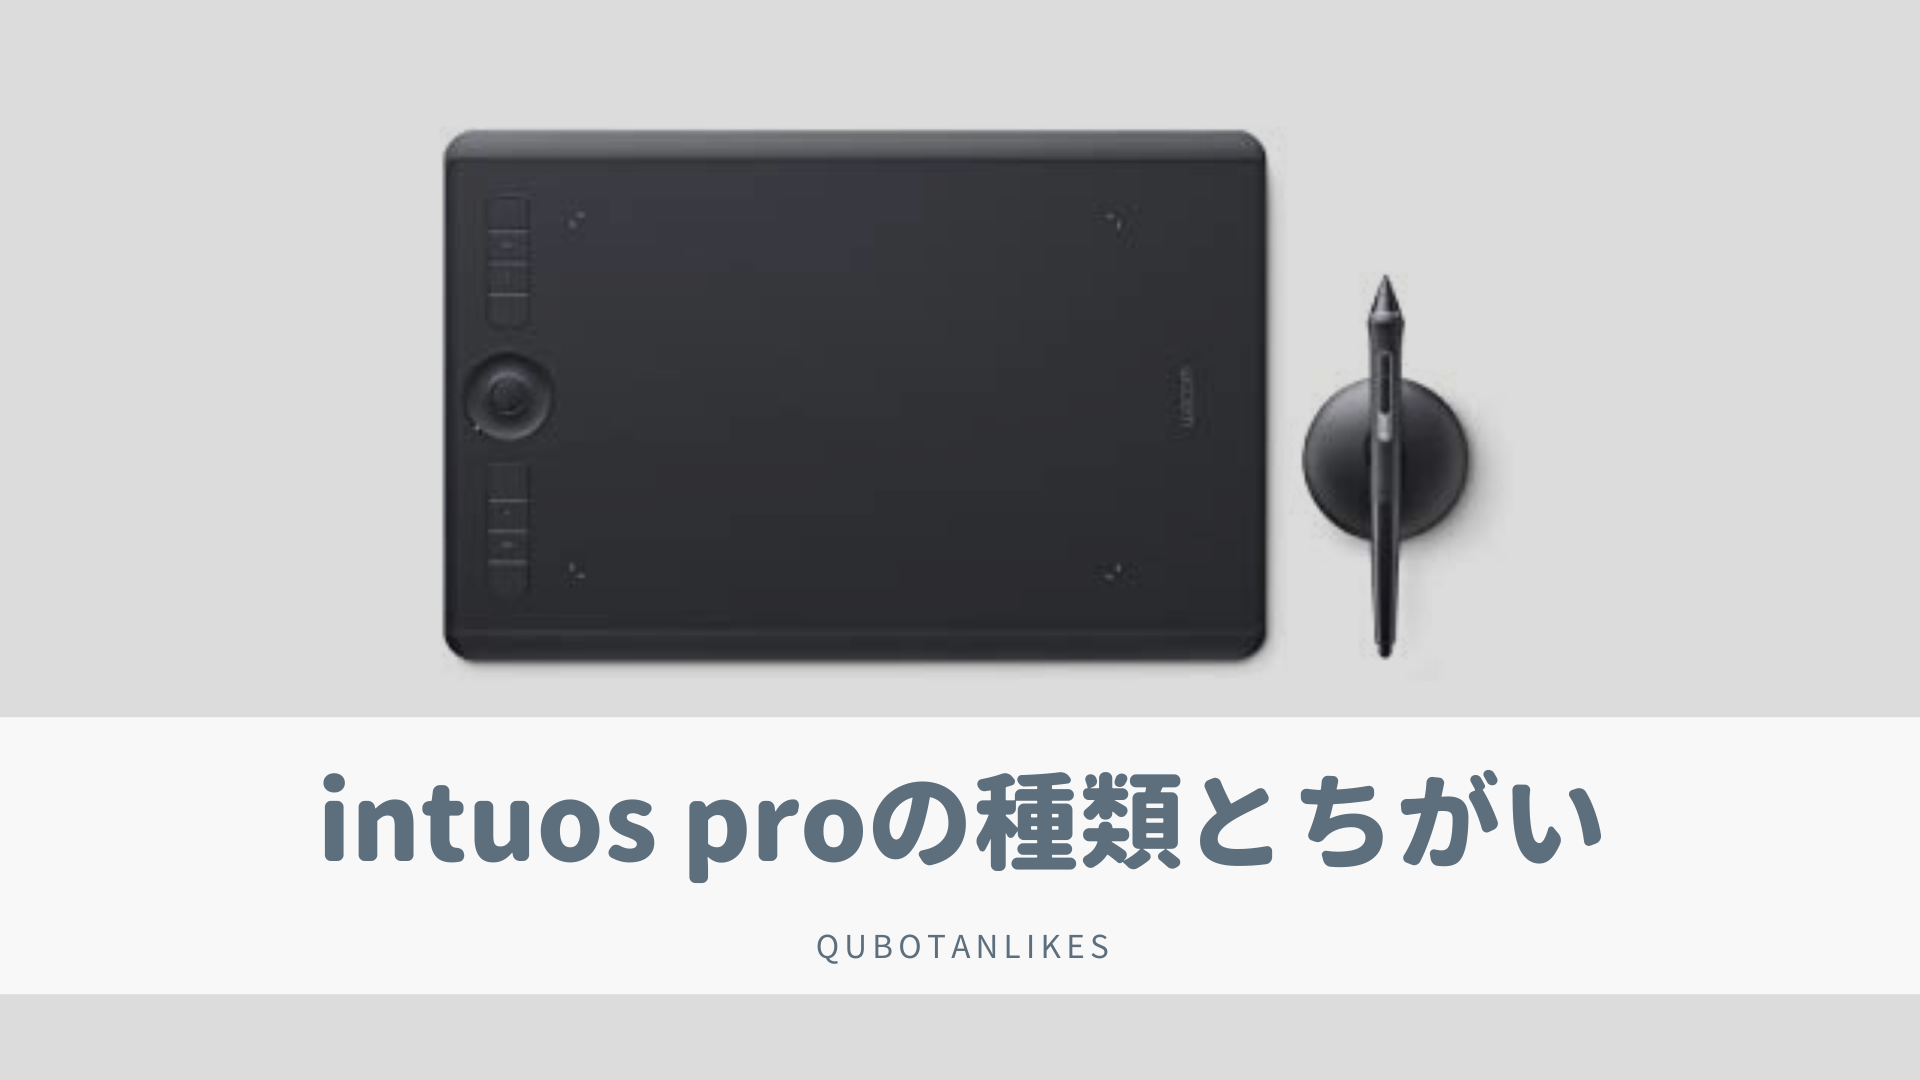 最高 Pro Medium ワコム PC/タブレット PTH-660/K… ペンタブレット Intuos Gekiyasu / Shinsaku